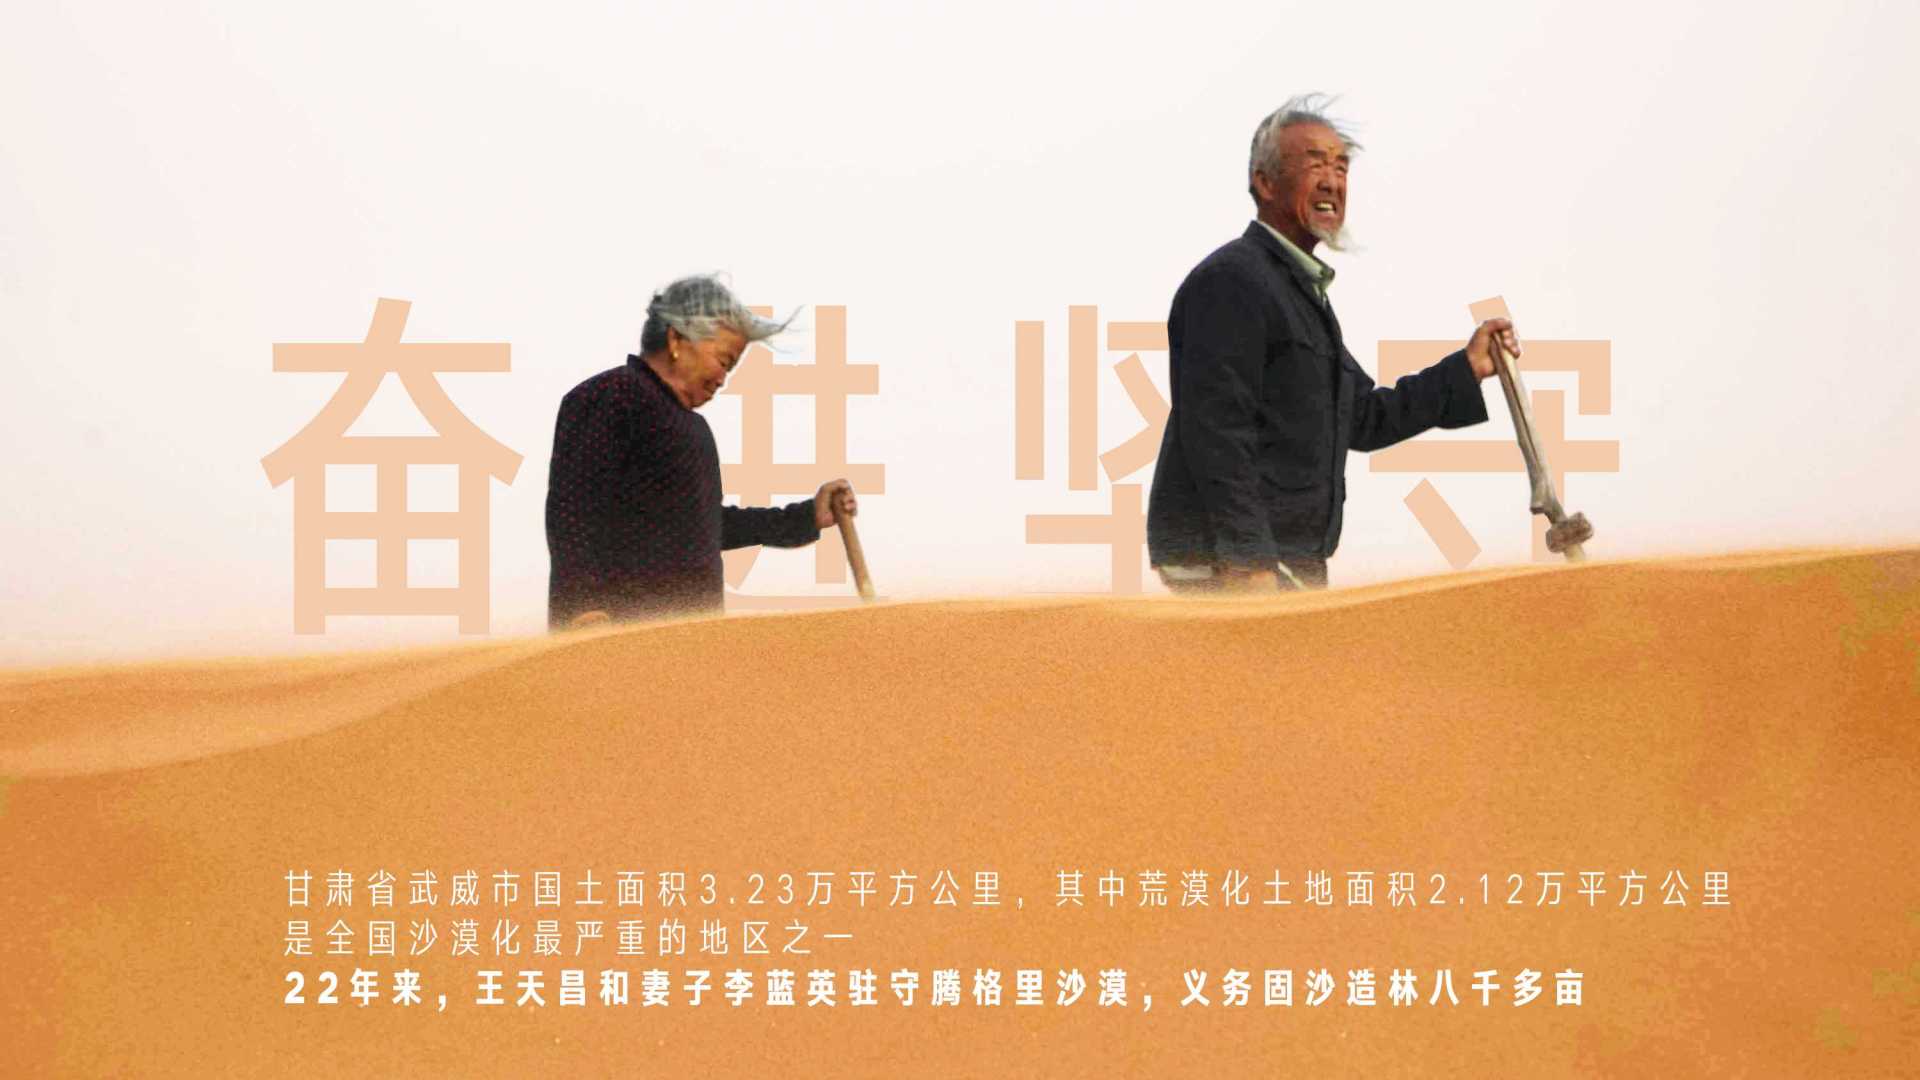 奋进新征程-第六届中国图片大赛宣传片